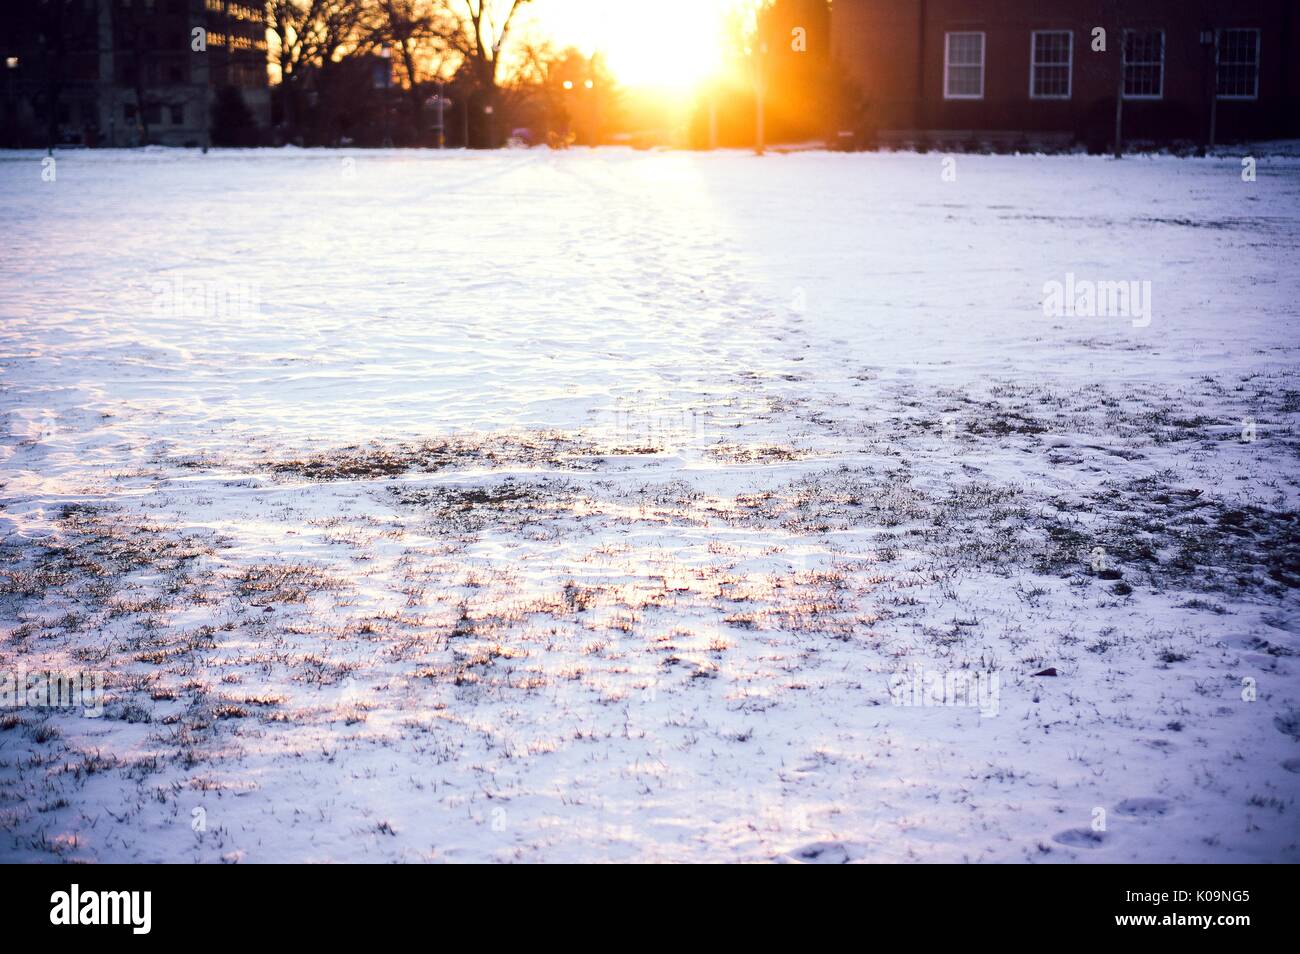 Le soleil se couche entre les bâtiments universitaires sur le campus de l'Homewood enneigé à l'Université Johns Hopkins de Baltimore, Maryland, 2015. Avec la permission de Eric Chen. Banque D'Images